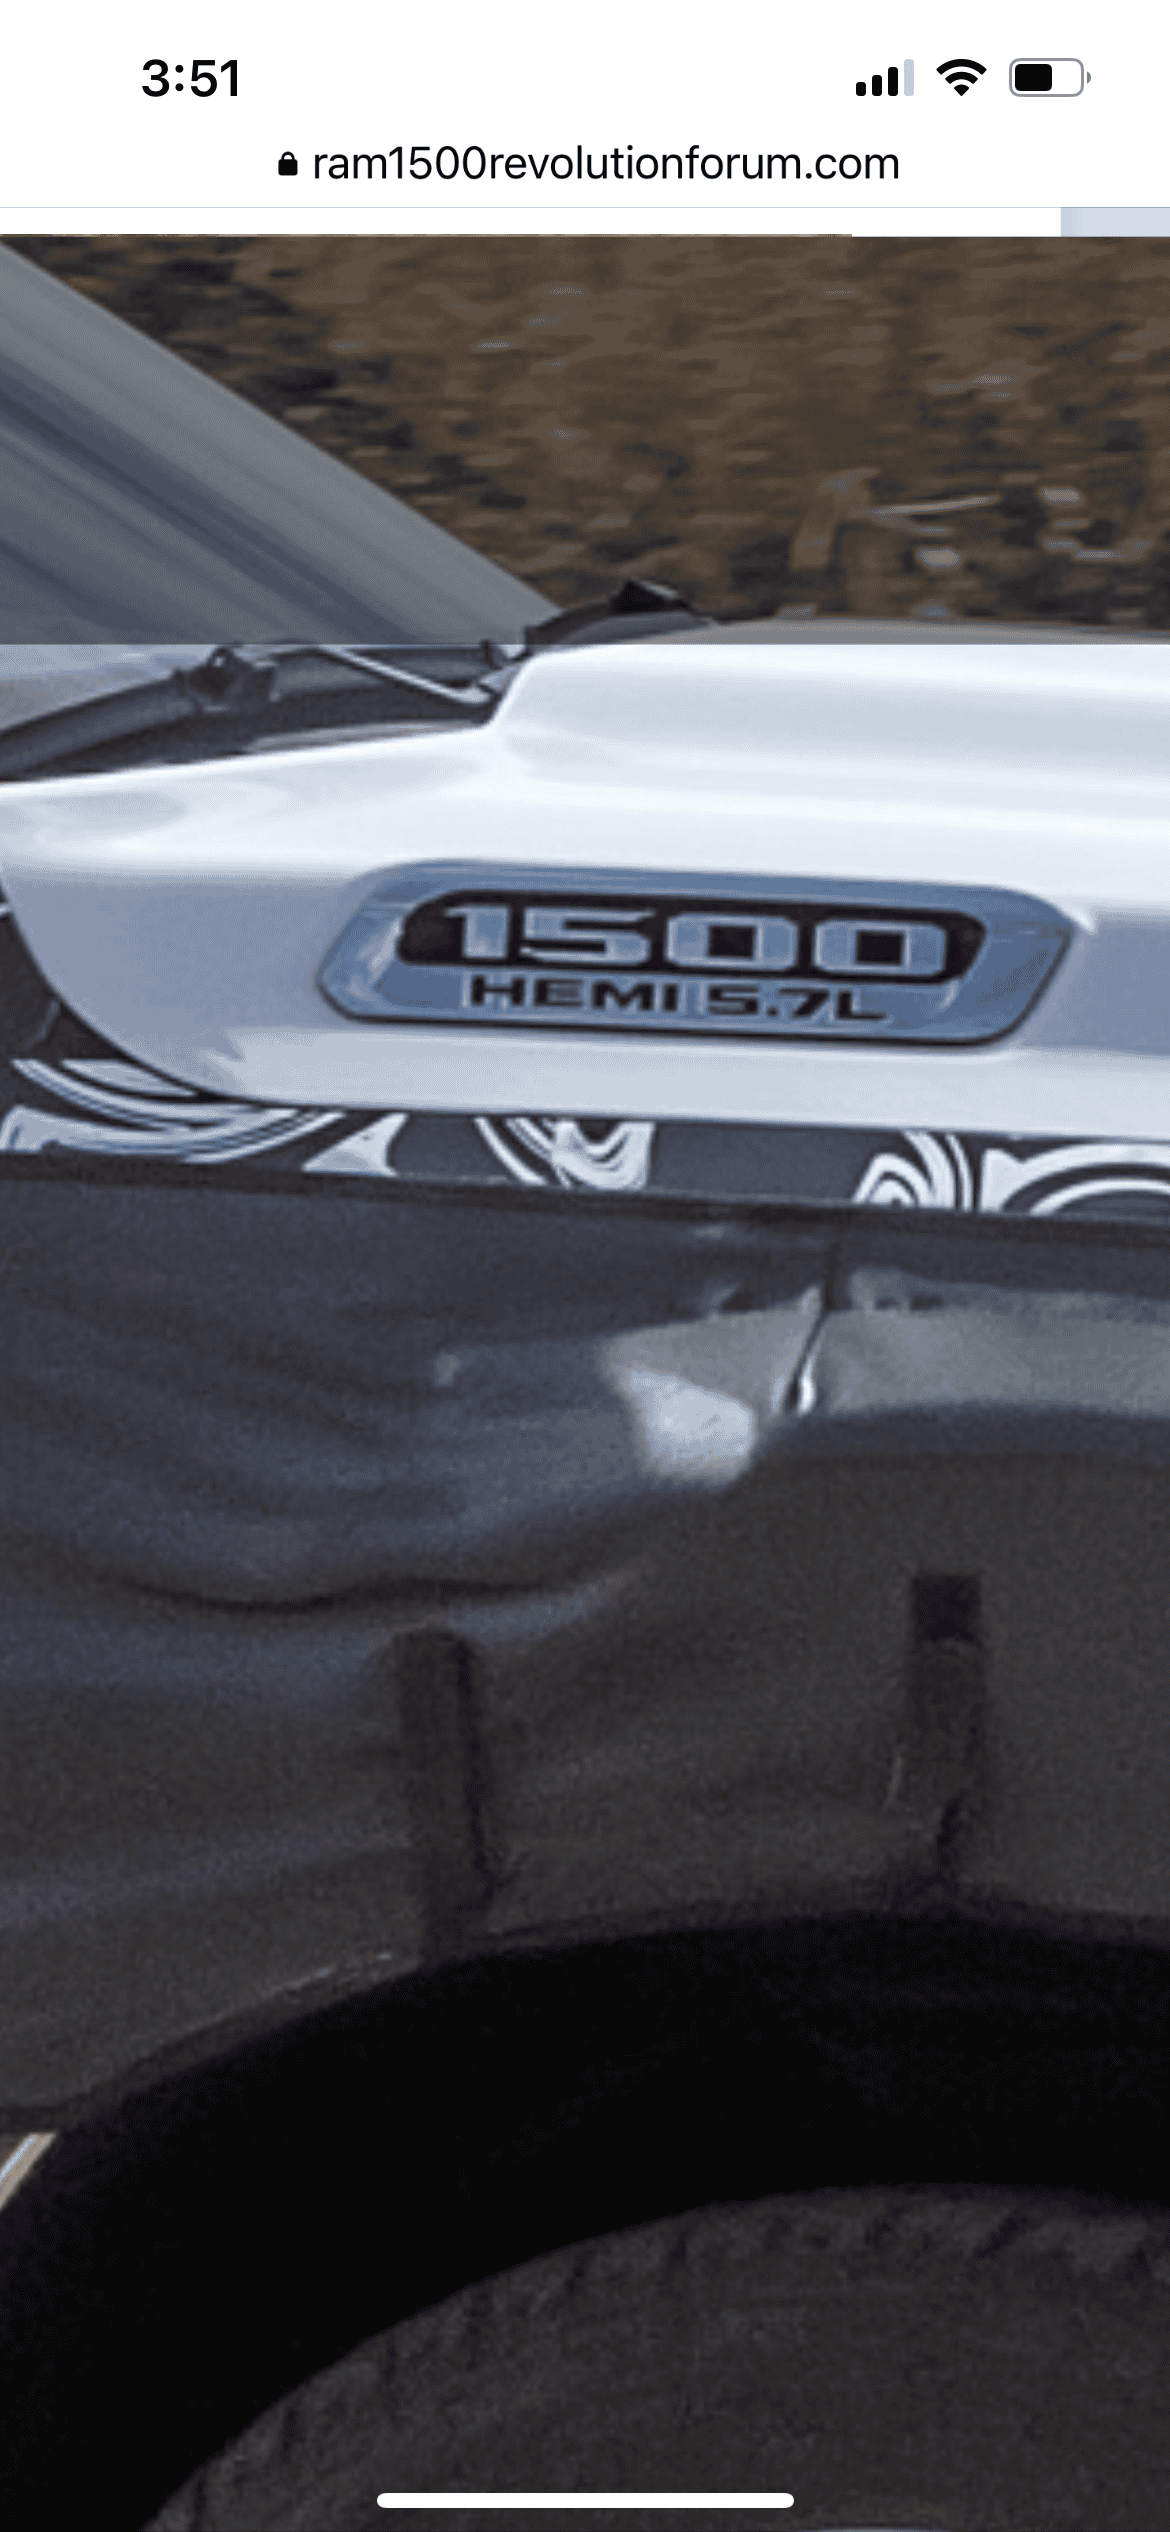 Ford F-150 Lightning Ram 1500 EV Revolution spied benchmarking F-150 Lightning on test track FFA21A20-9CD8-4E54-B4C0-550C445AF6E2